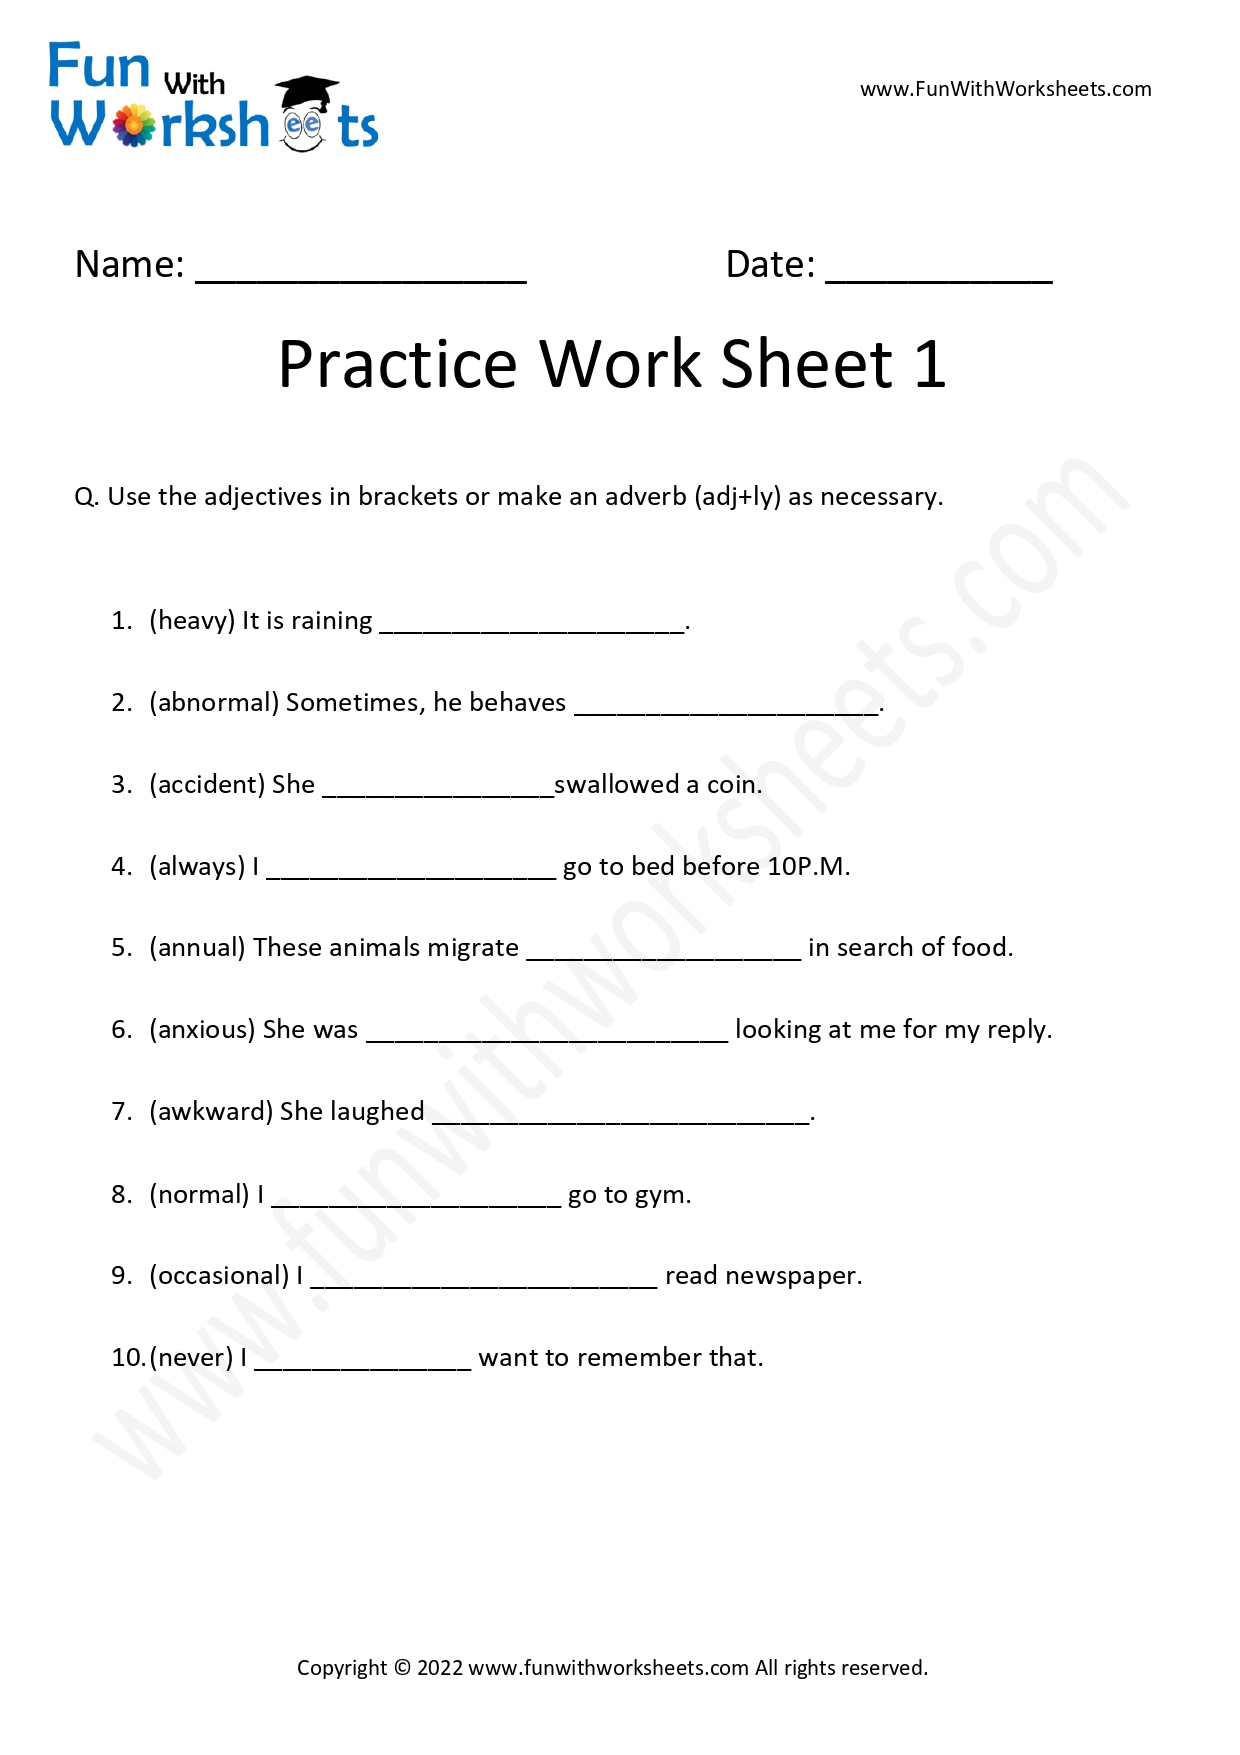 adverb-practice-worksheet-1-free-printables